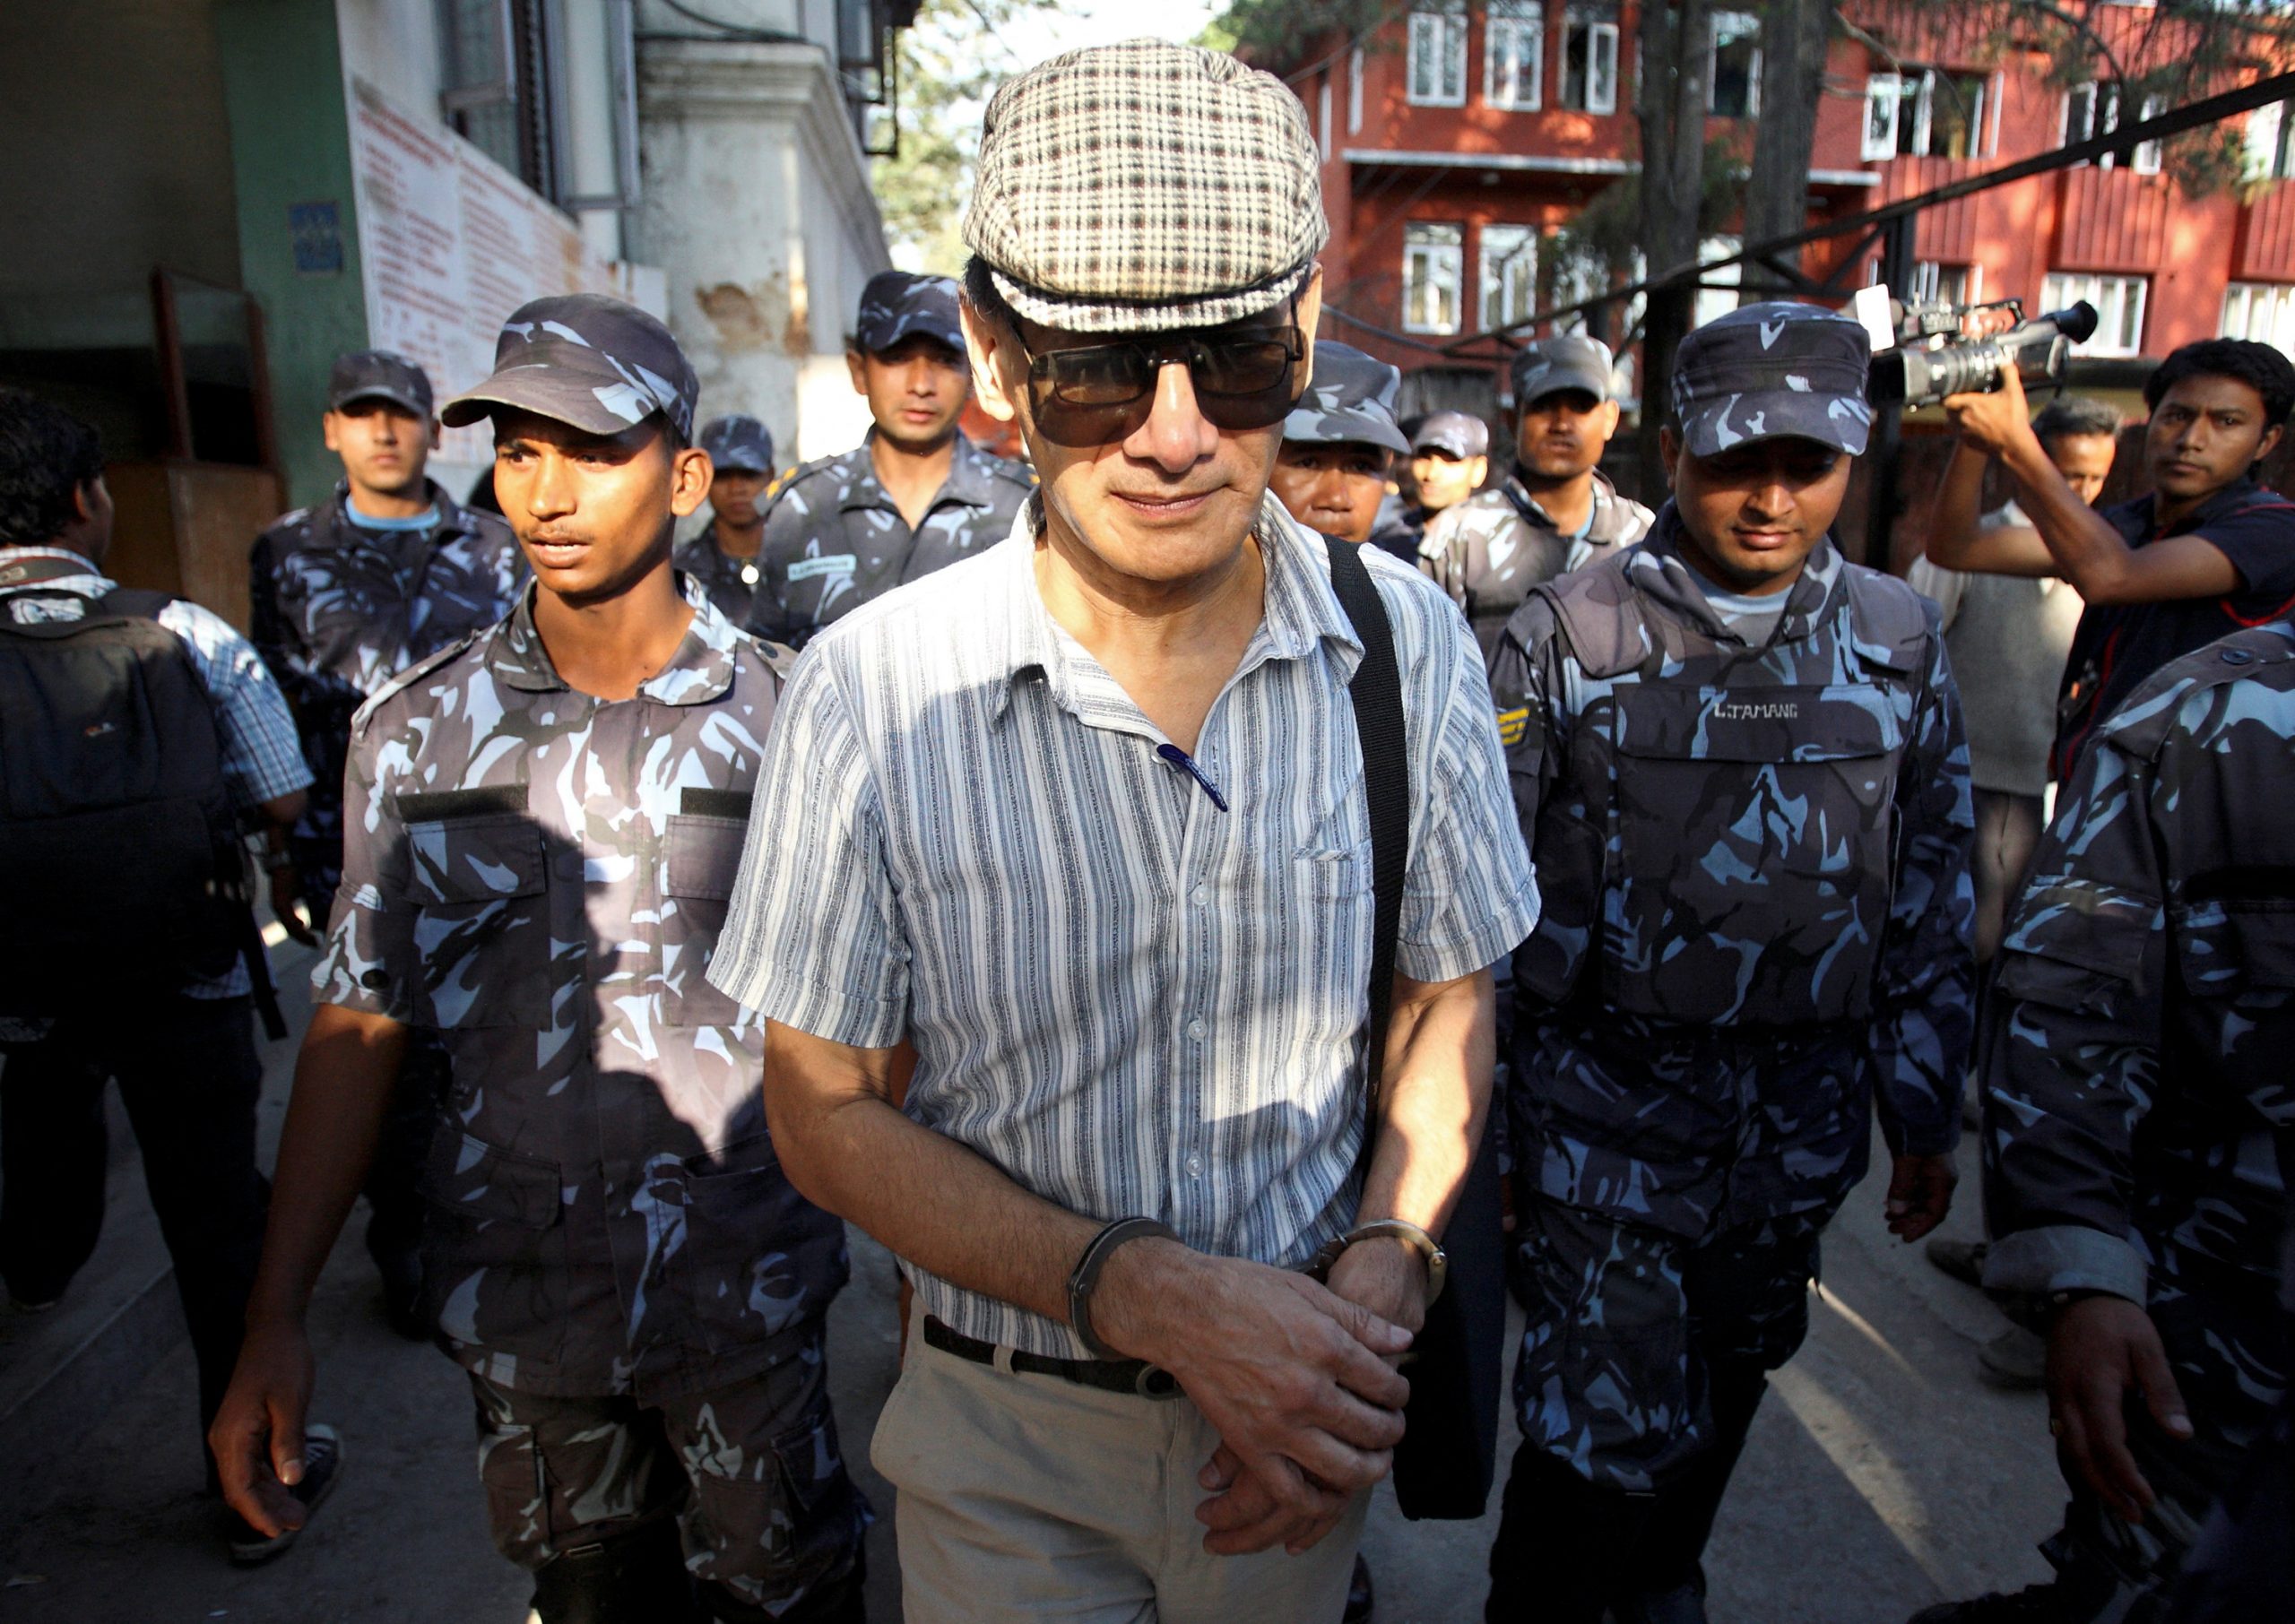 Γαλλία: Ο κατά συρροή δολοφόνος Charles Sobhraj επέστρεψε μετά από 20 χρόνια σε φυλακή του Νεπάλ